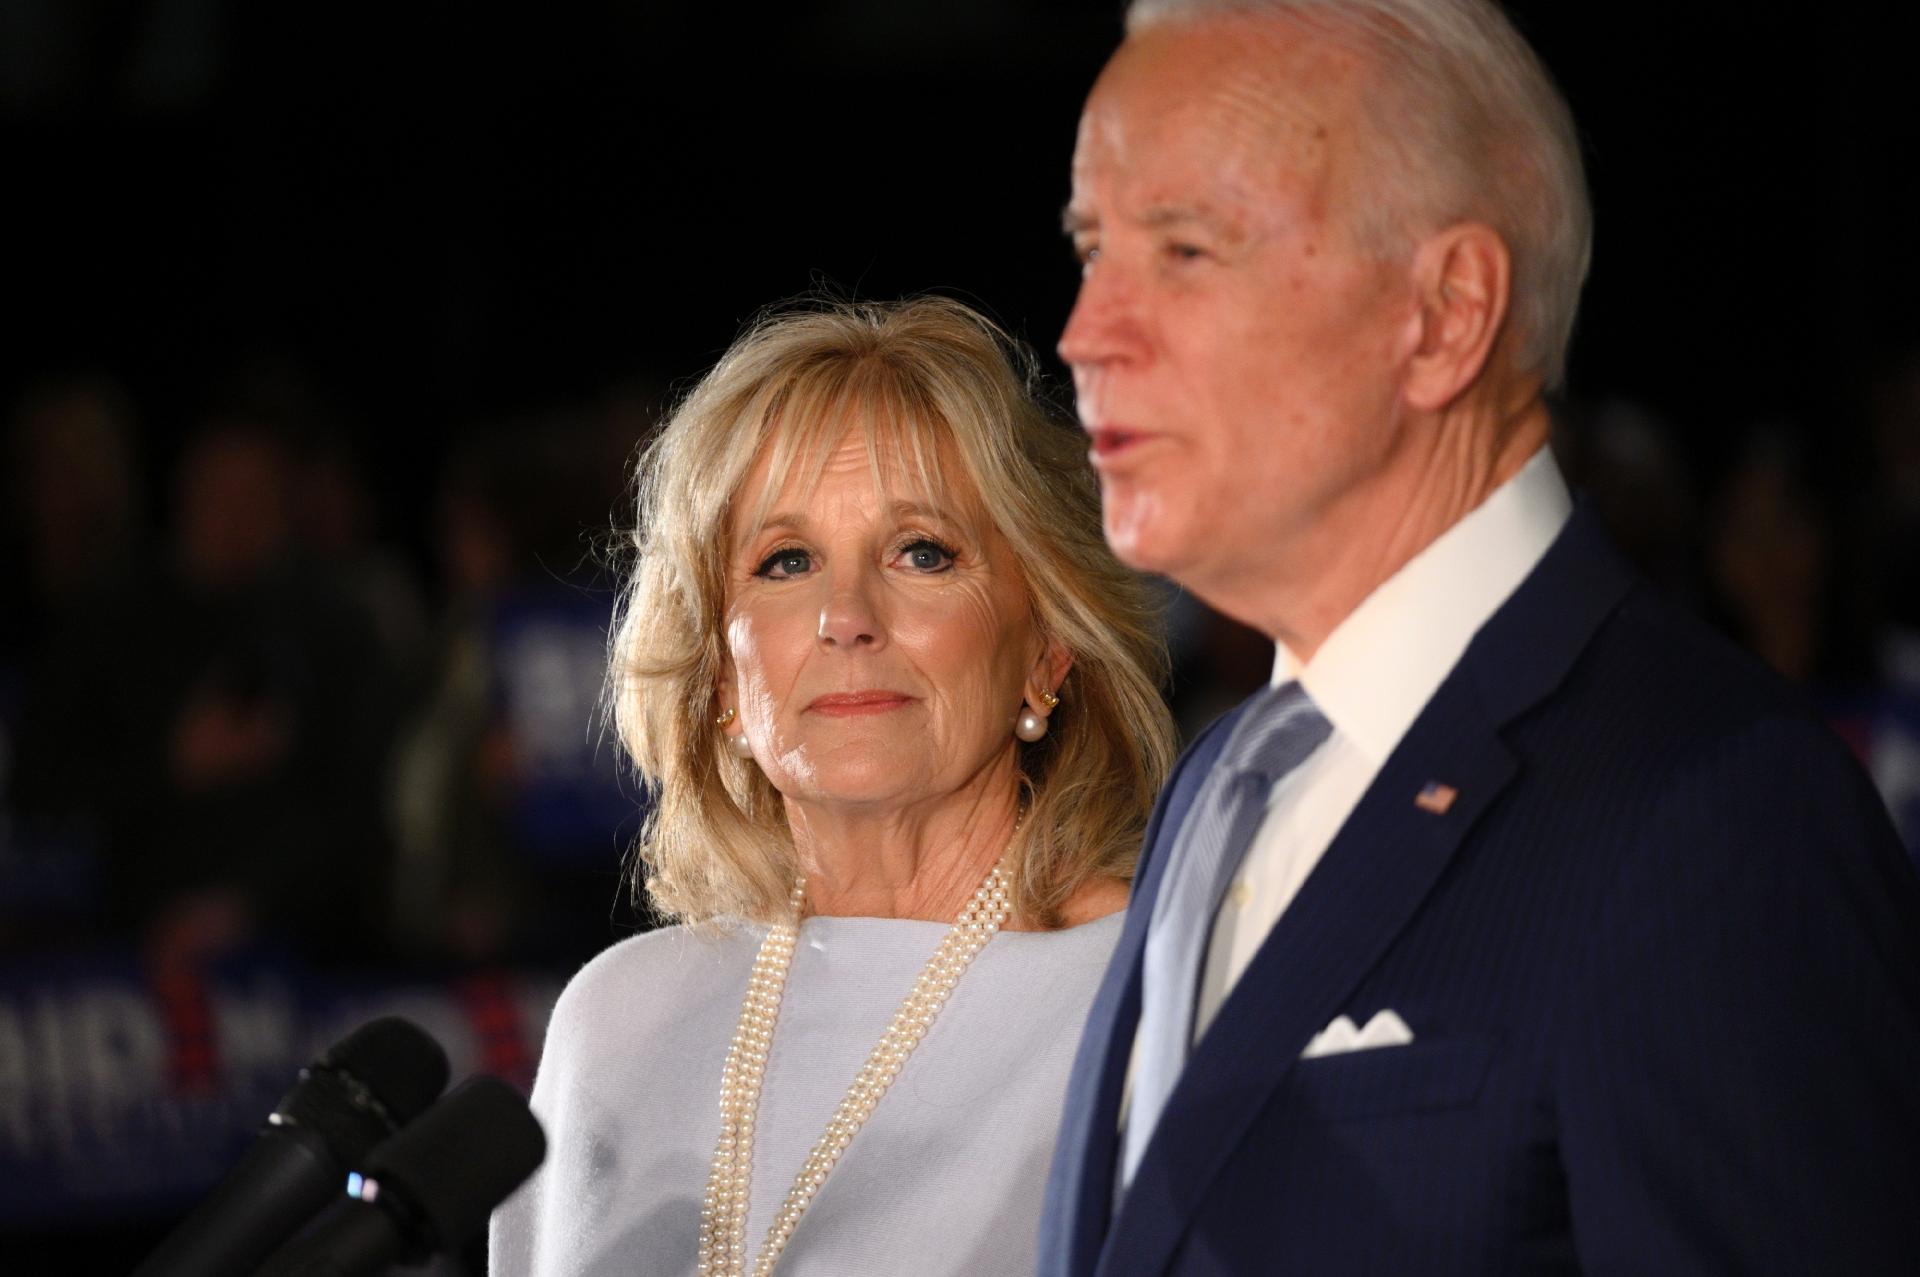 Joe Biden président : qui est Jill Biden, la nouvelle First Lady ?